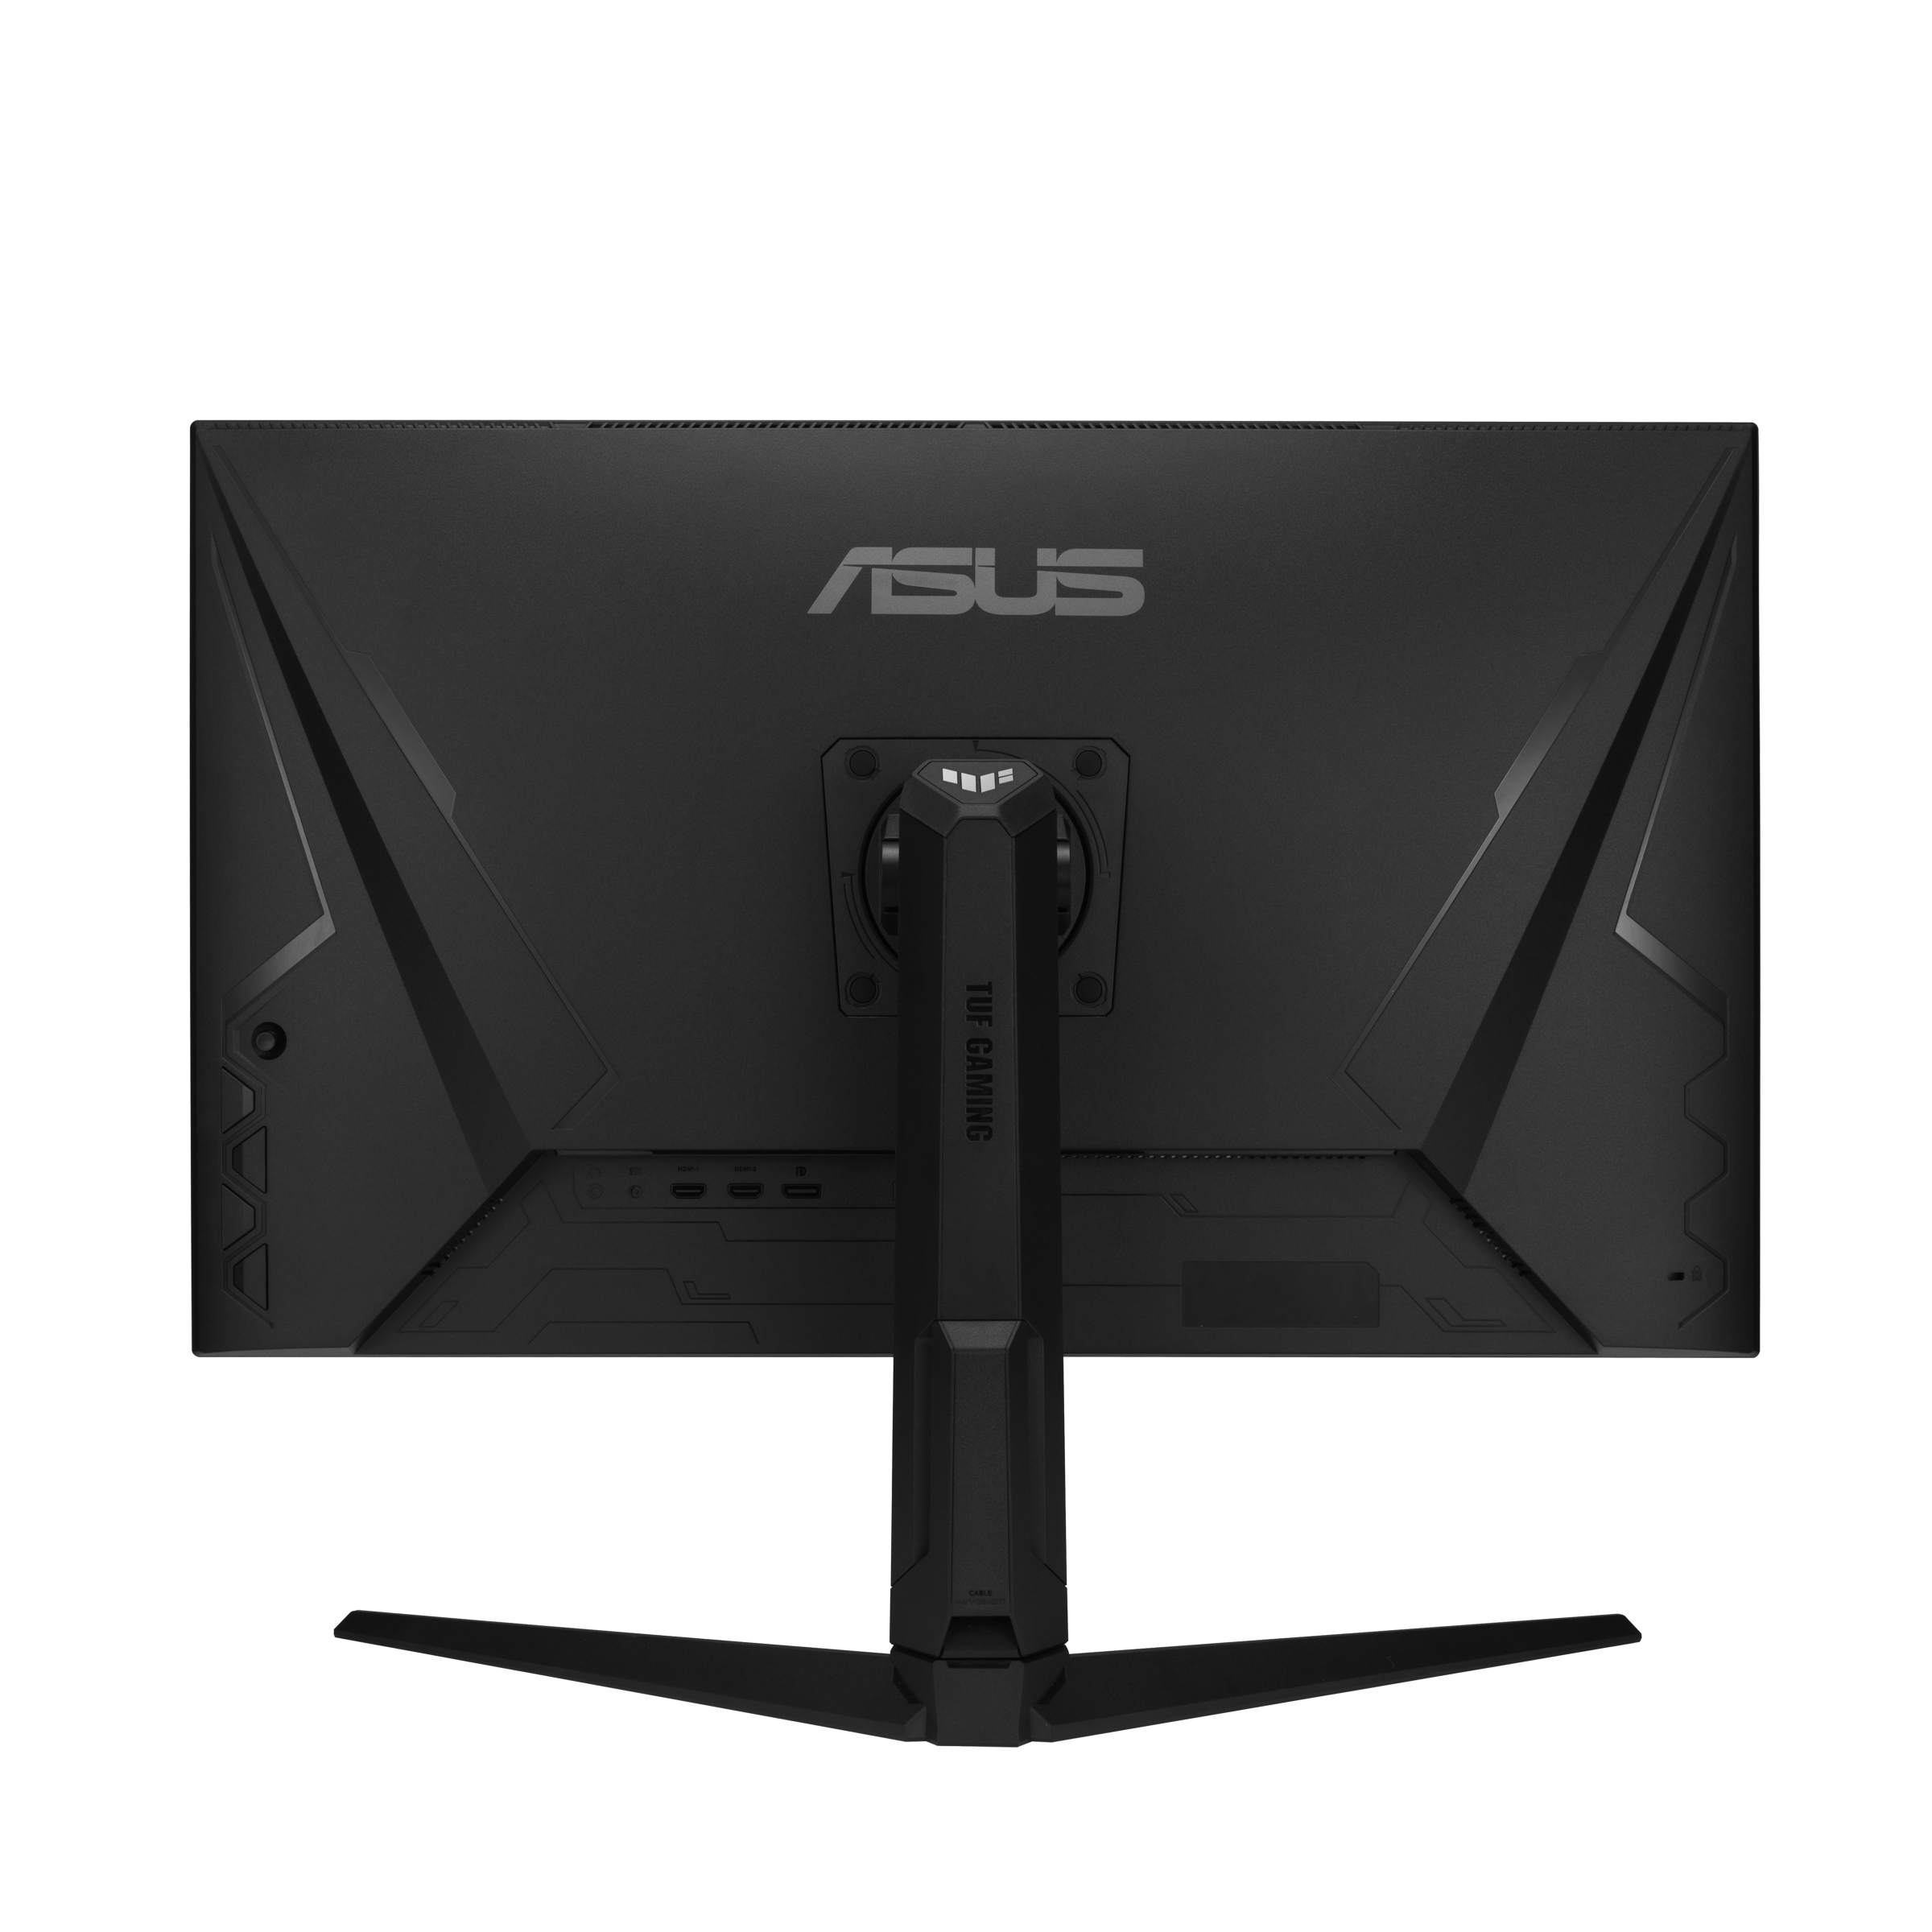 Immagine pubblicata in relazione al seguente contenuto: ASUS introduce il monitor TUF Gaming VG32AQL1A con pannello IPS QHD da 1ms | Nome immagine: news32277_ASUS-TUF-Gaming-VG32AQL1A_4.png